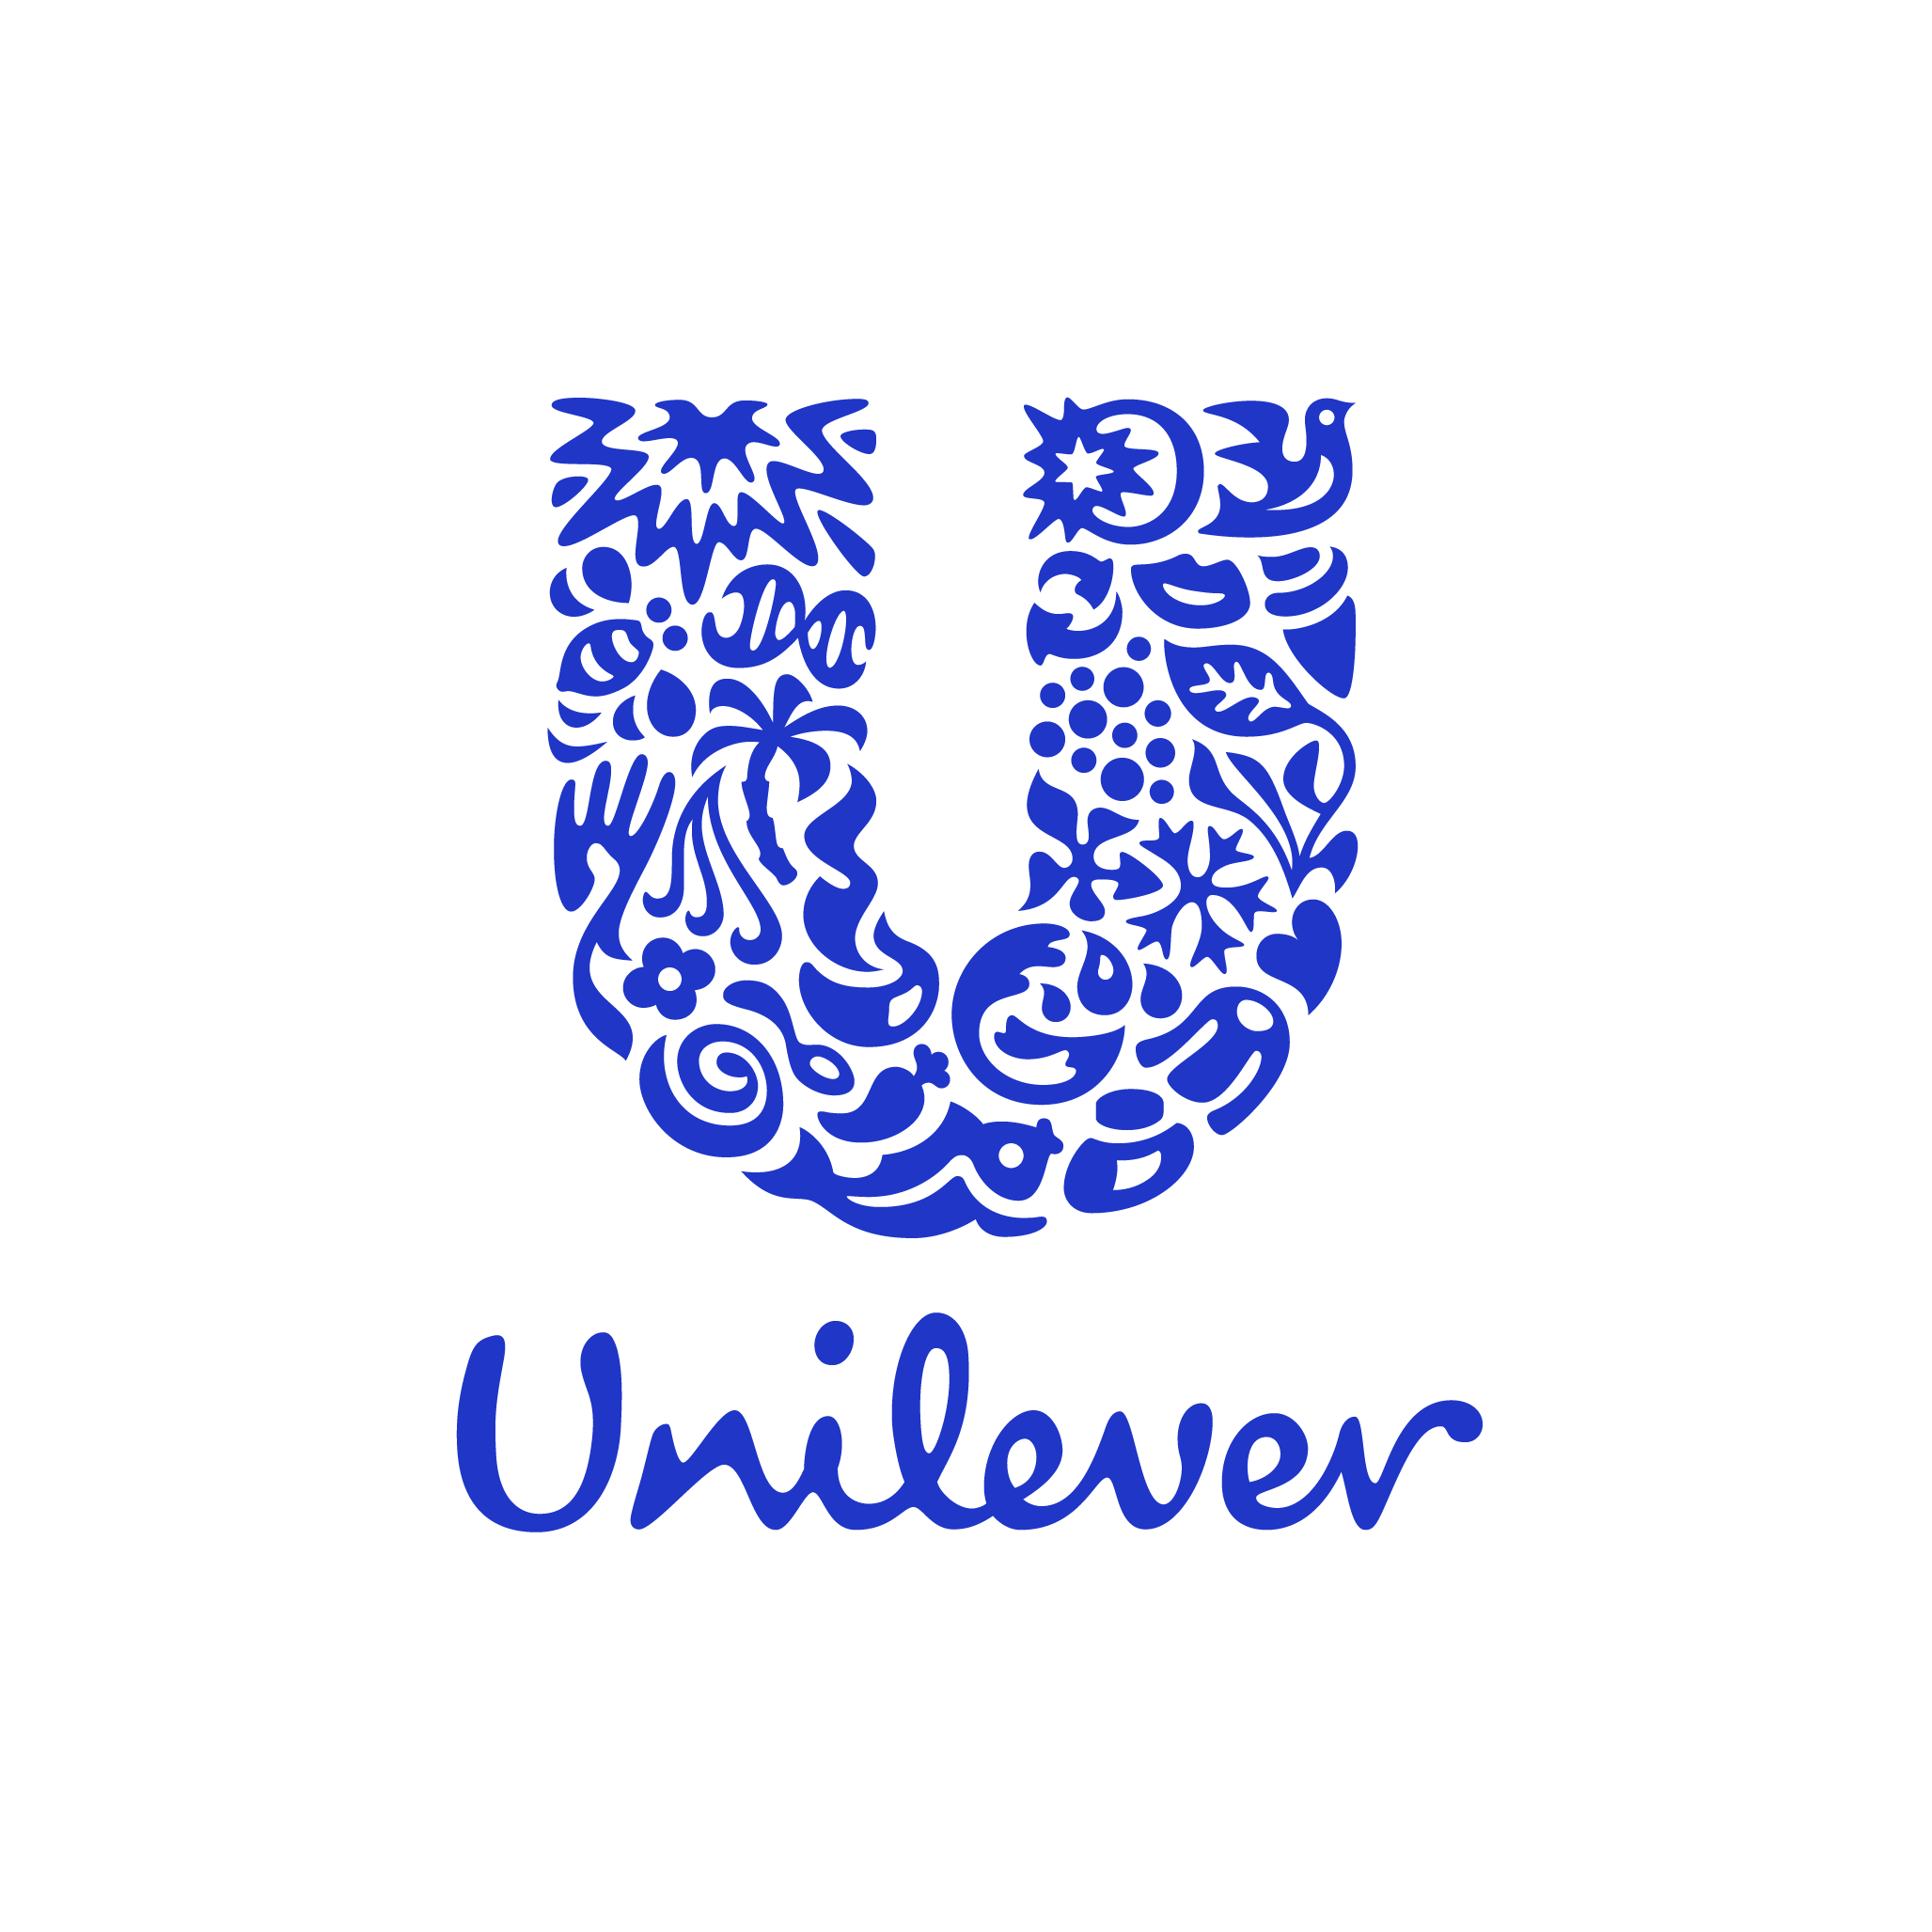 Unilever a udržitelnost: Nulový odpad z továren a snížení emisí o 65 %